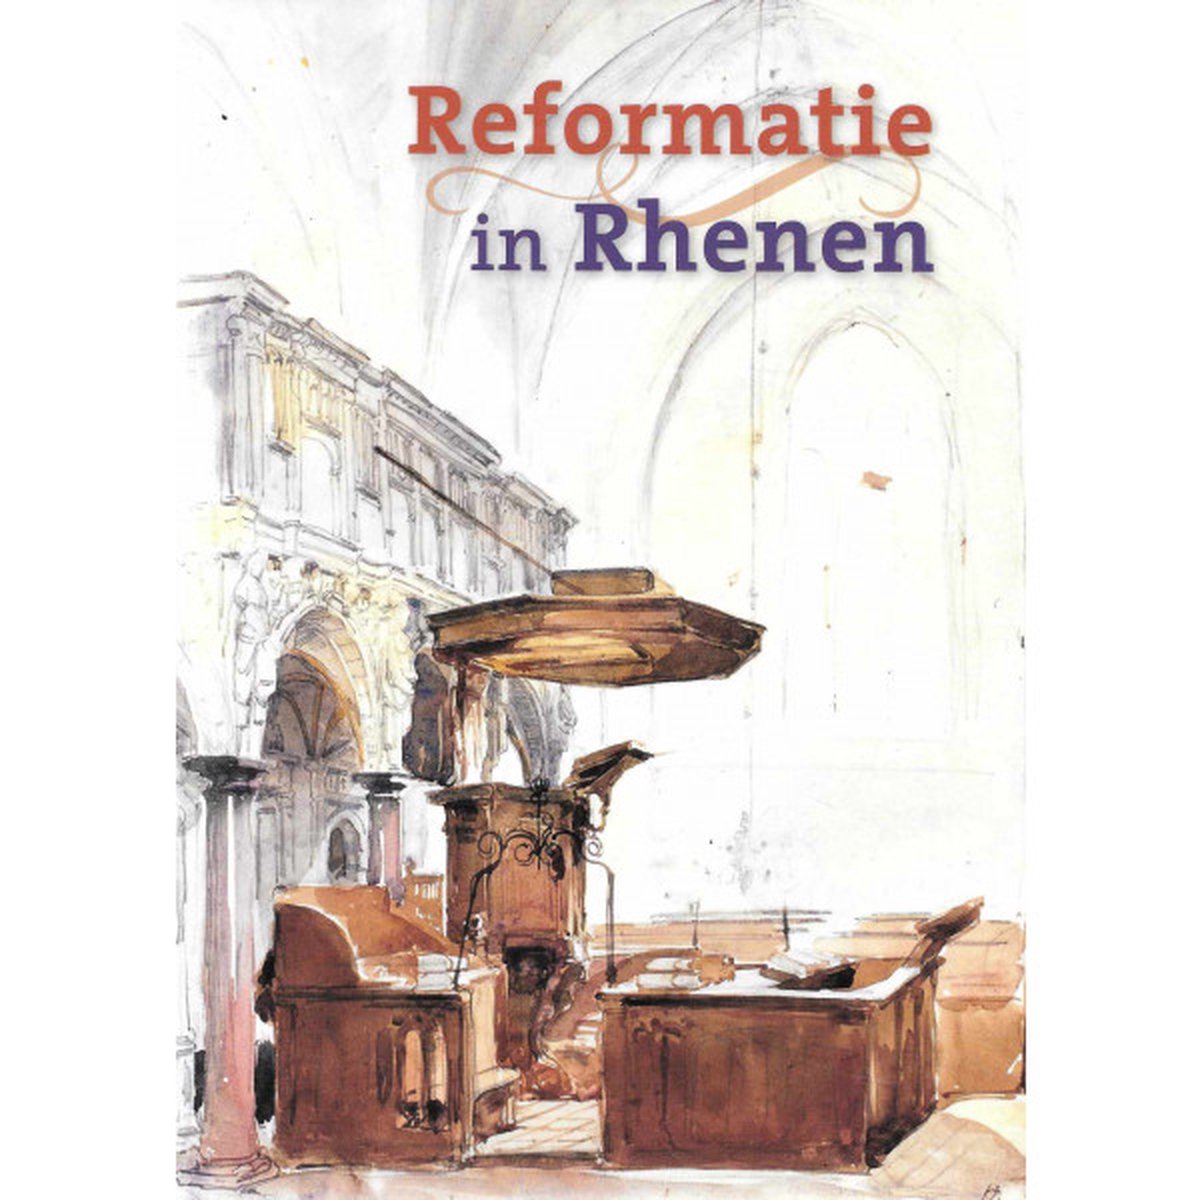 Reformatie in Rhenen